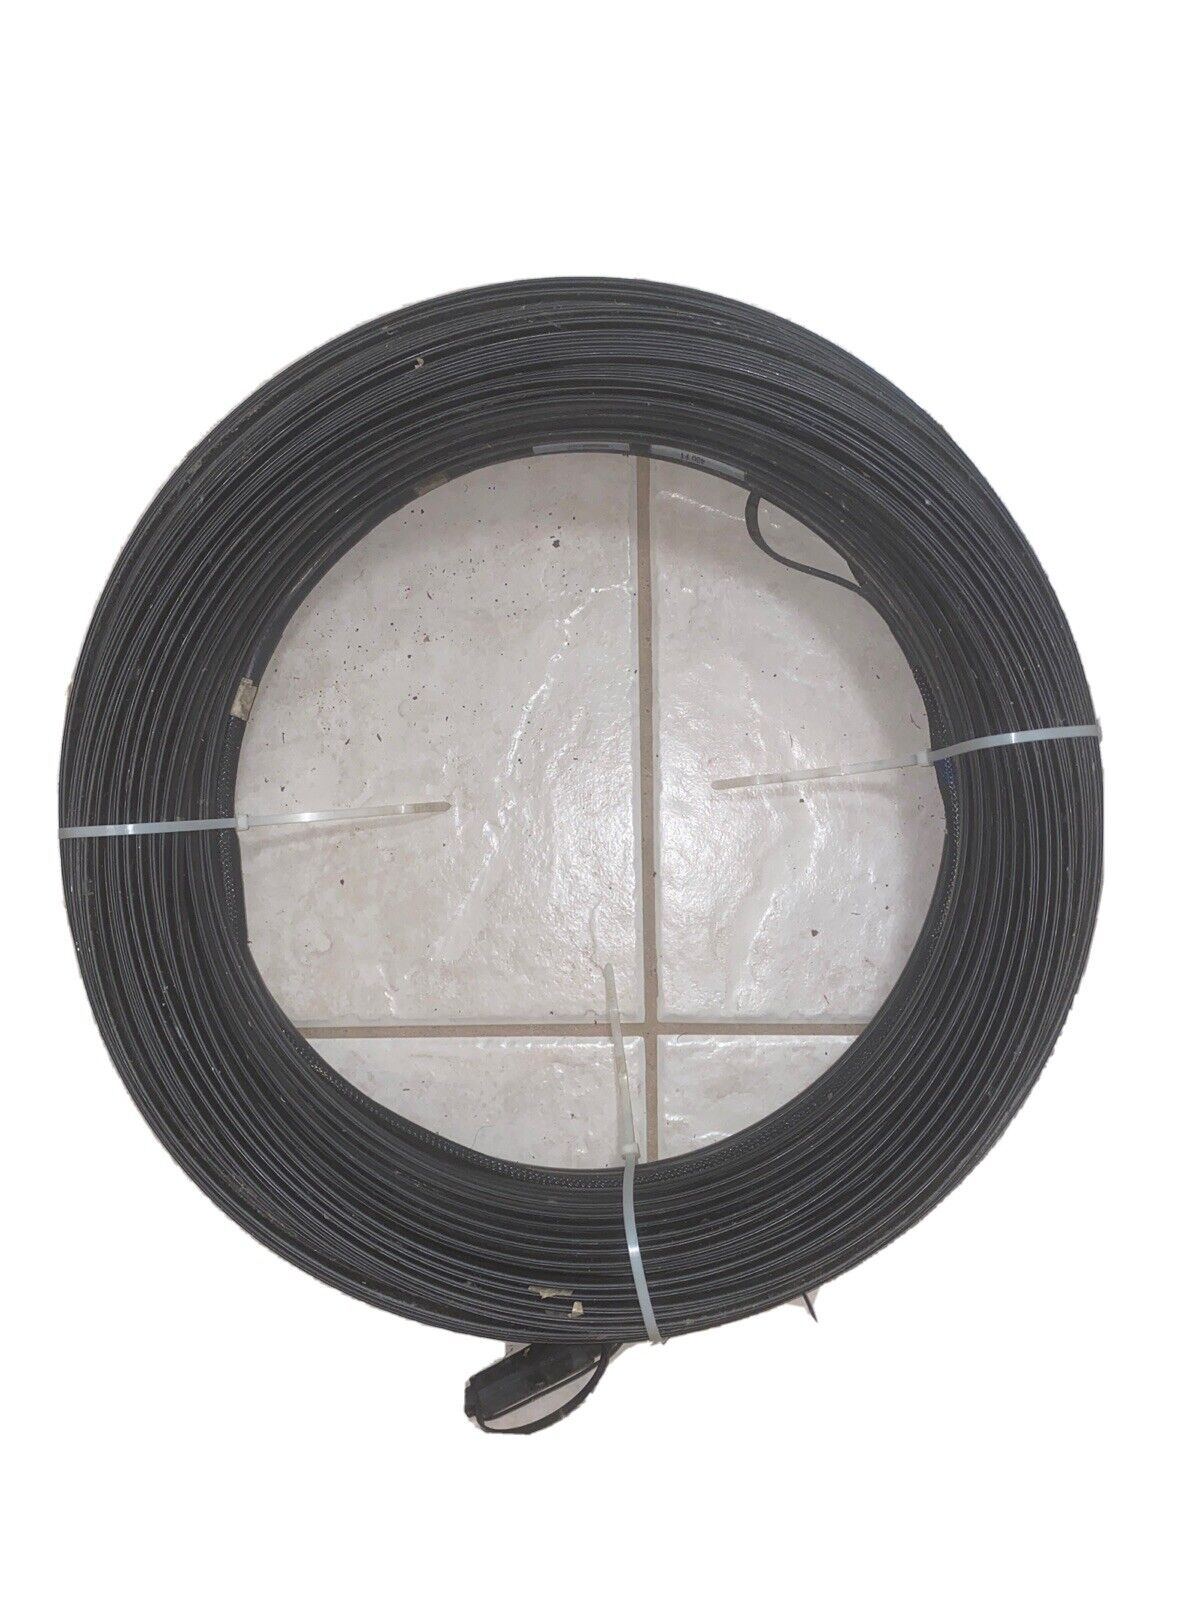 commscope 400 feet fiber optic cable 